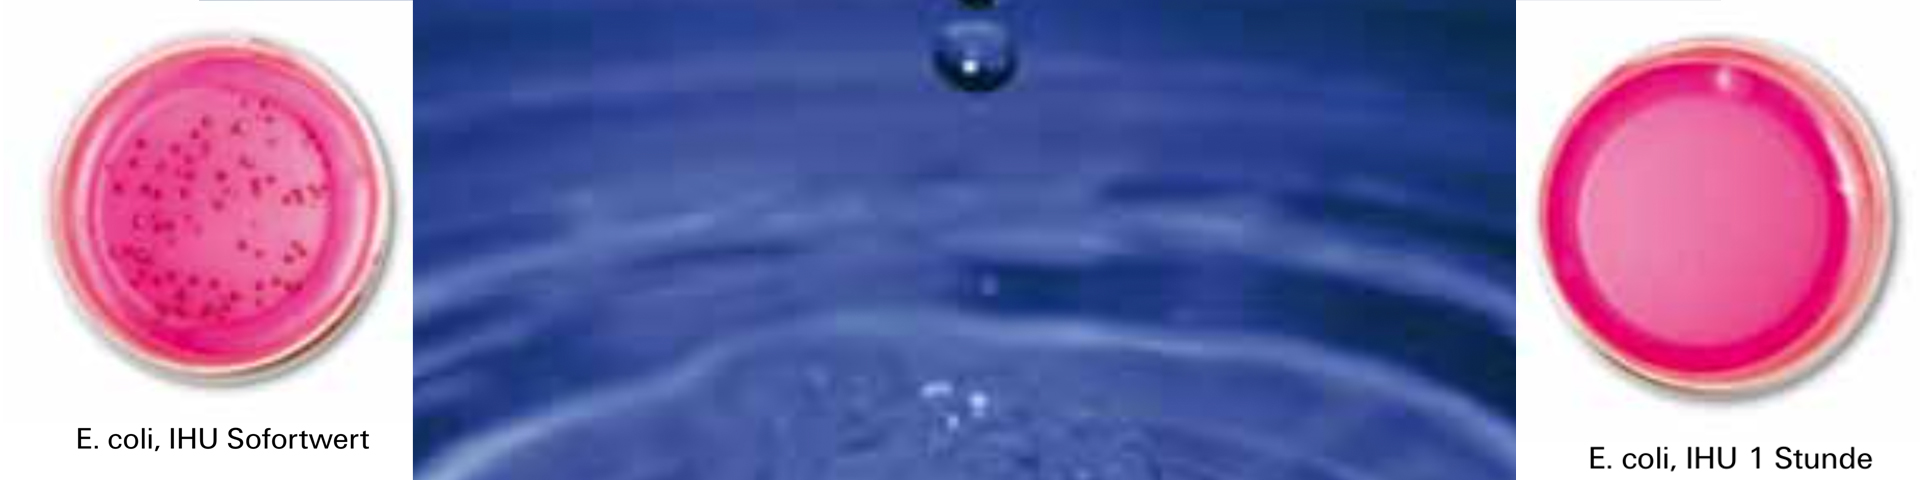 Unsere Mission: Besseres Wasser - WELLAN®2000 GmbH world wide